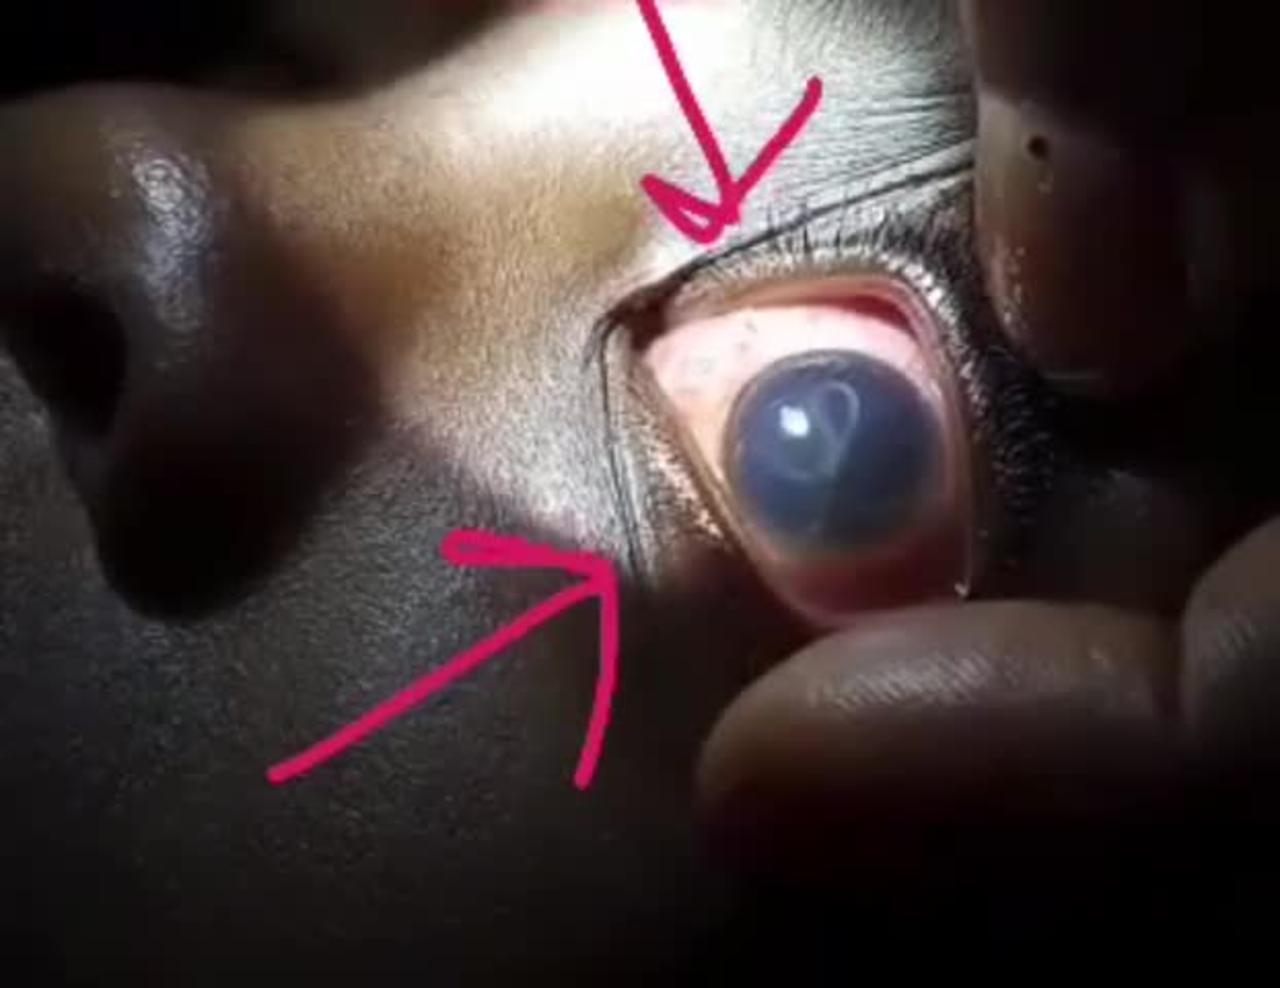 How a Parasite Looks Through a Kid's Eye - SCARY